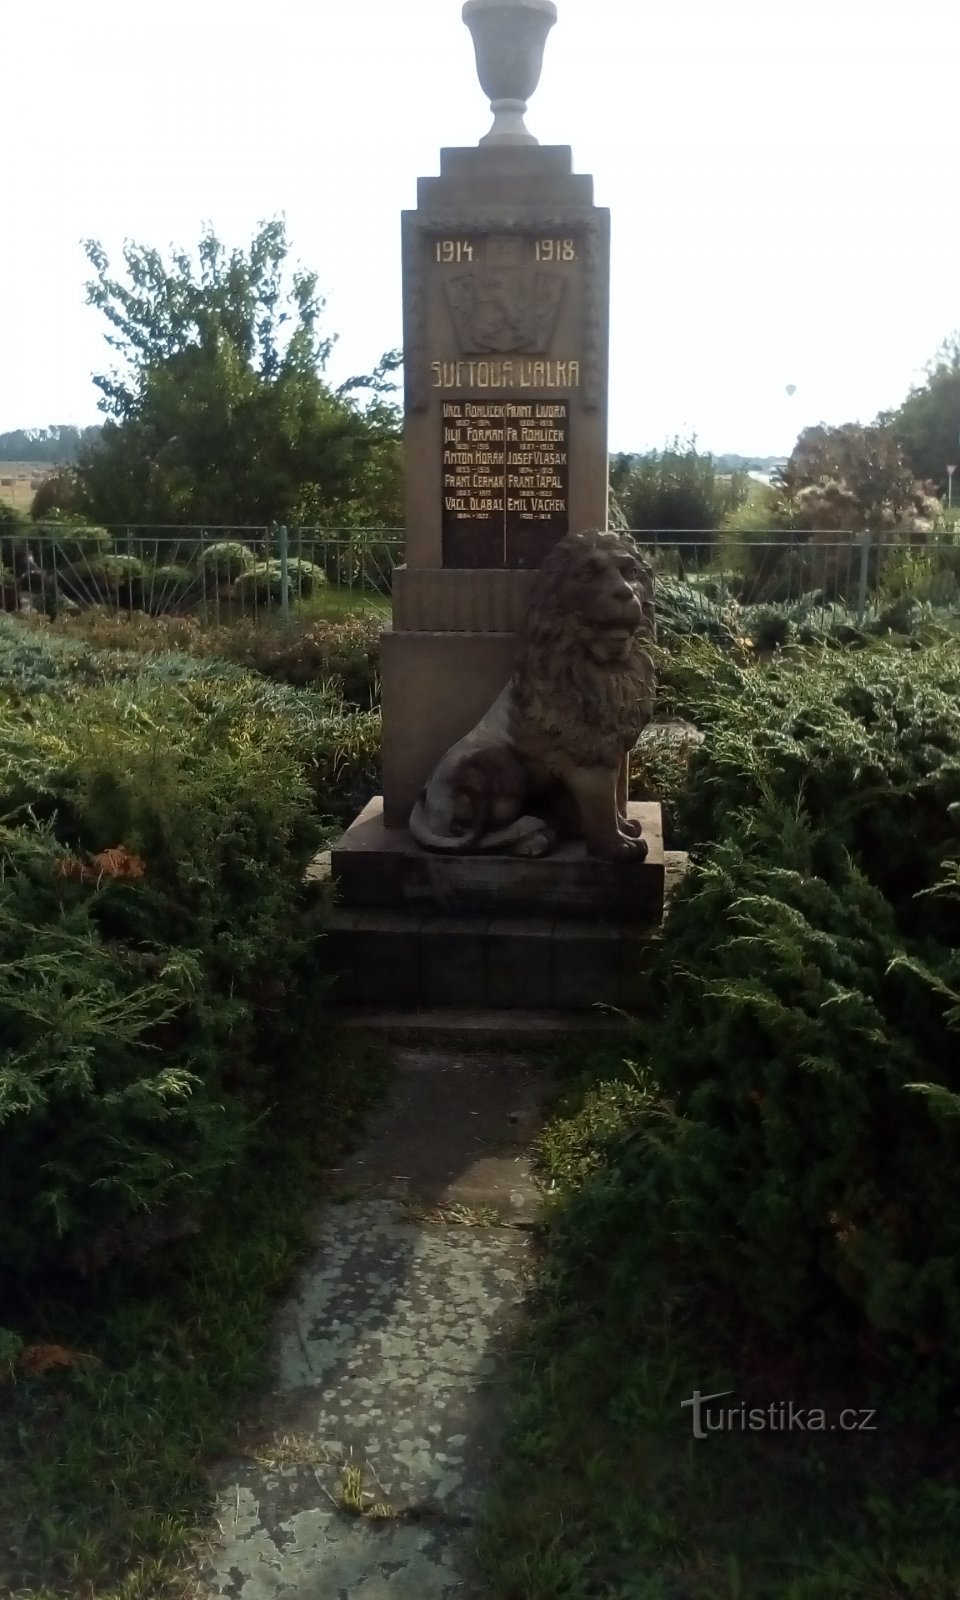 Đài tưởng niệm những người đã ngã xuống ở Raby